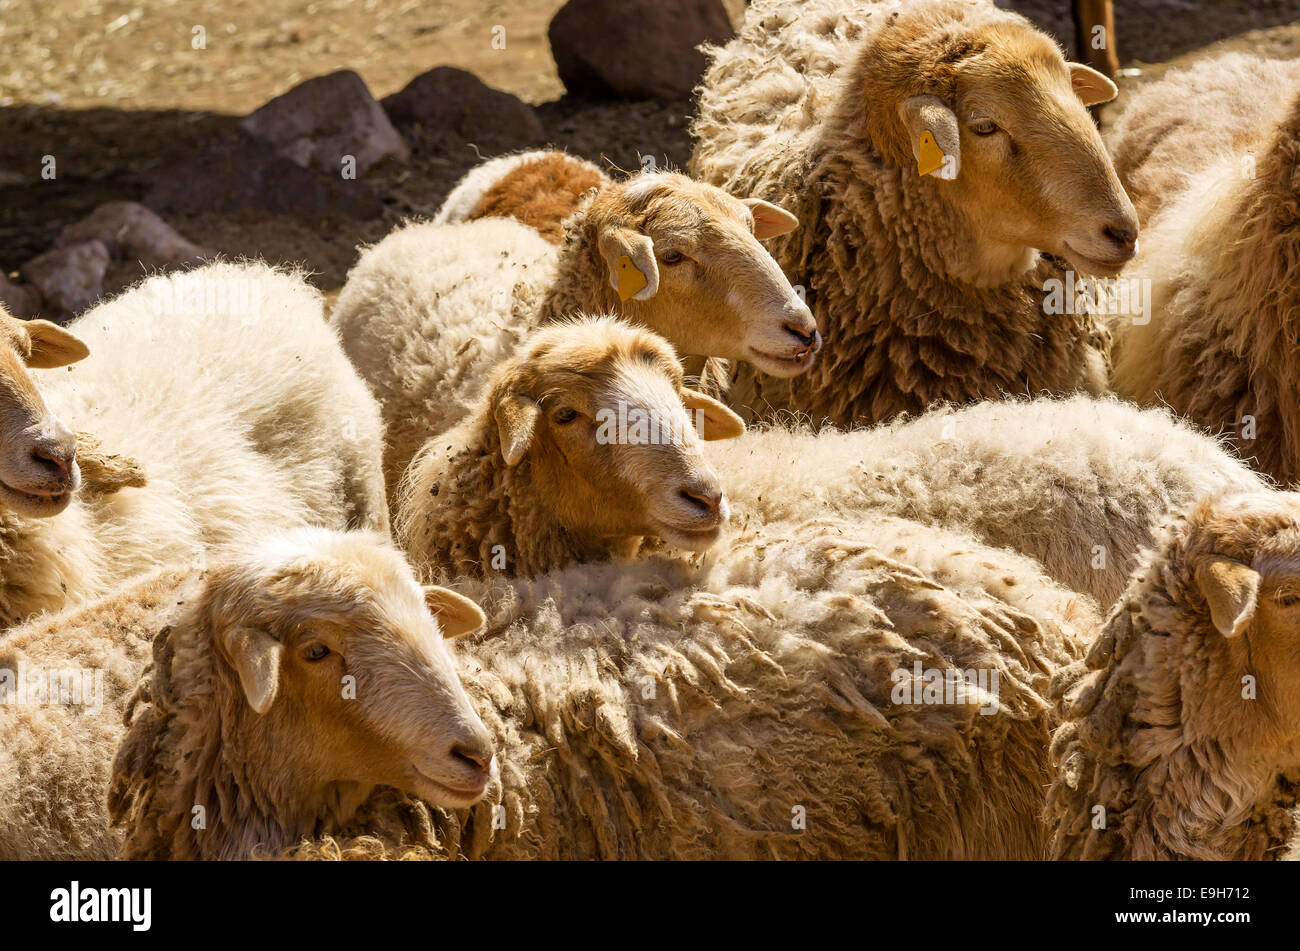 Flock of sheep, El Cedro, La Gomera, Canary Islands, Spain Stock Photo